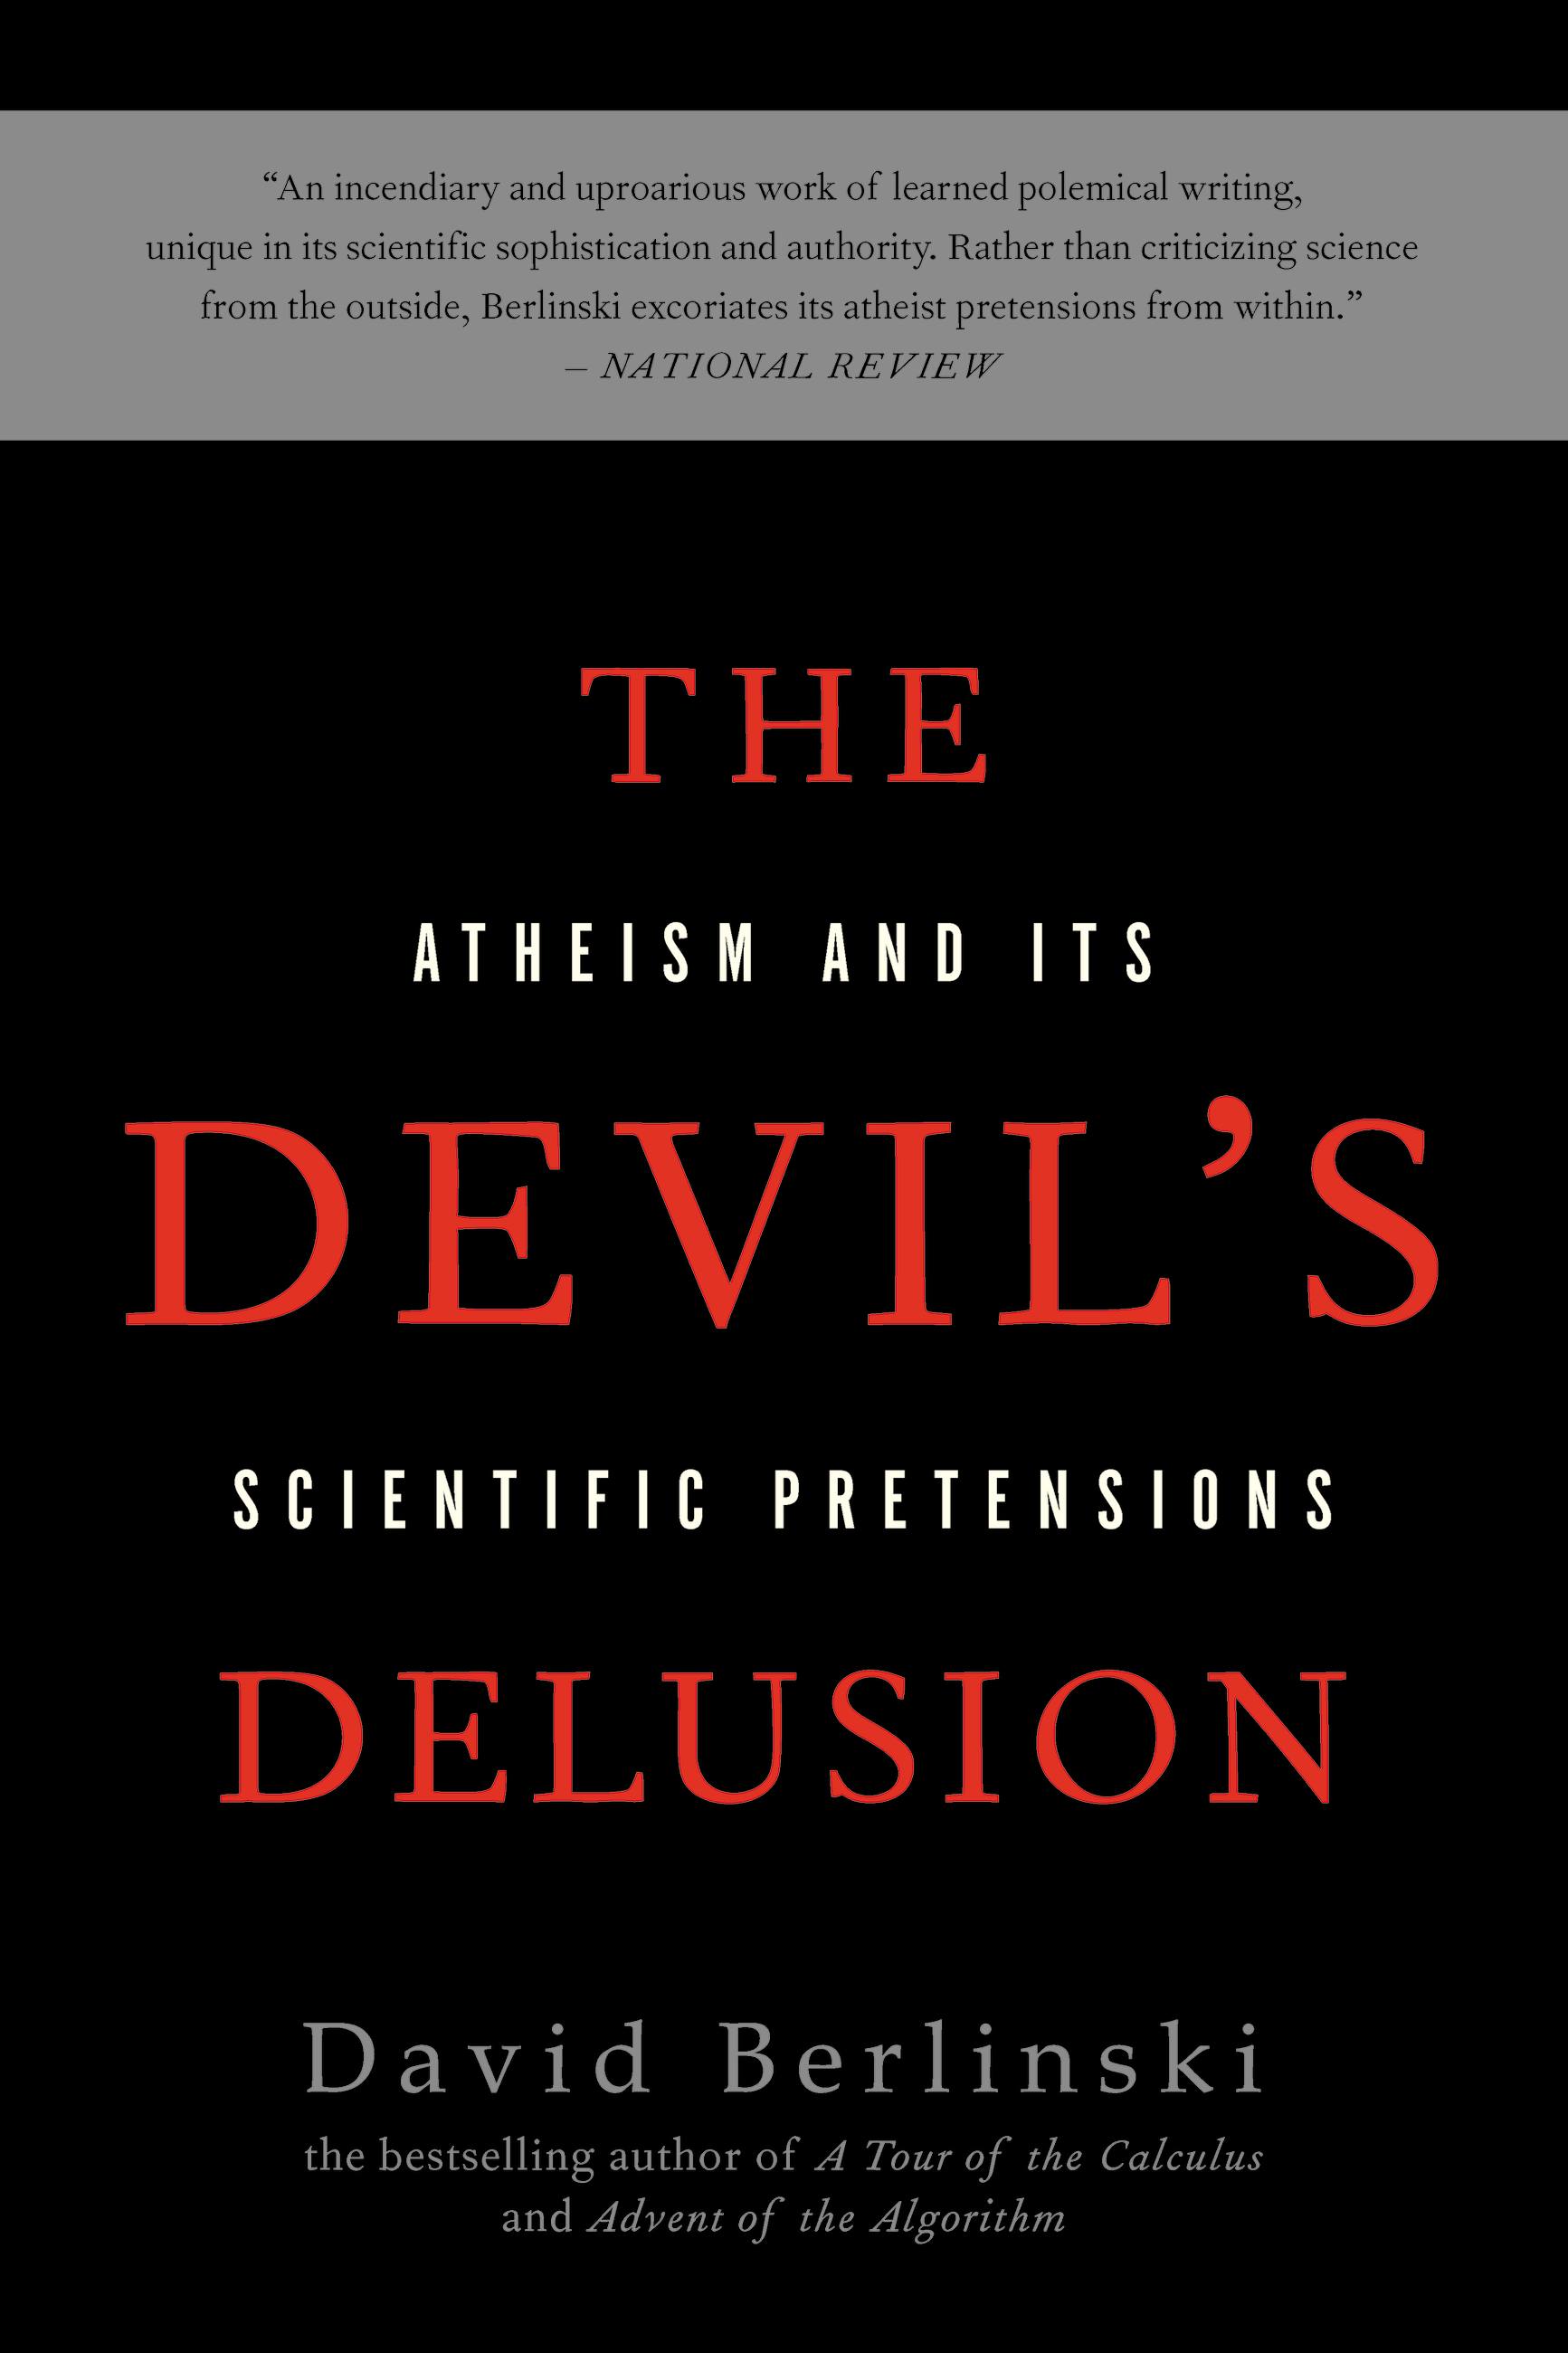 The Devil's Delusion by David Berlinski